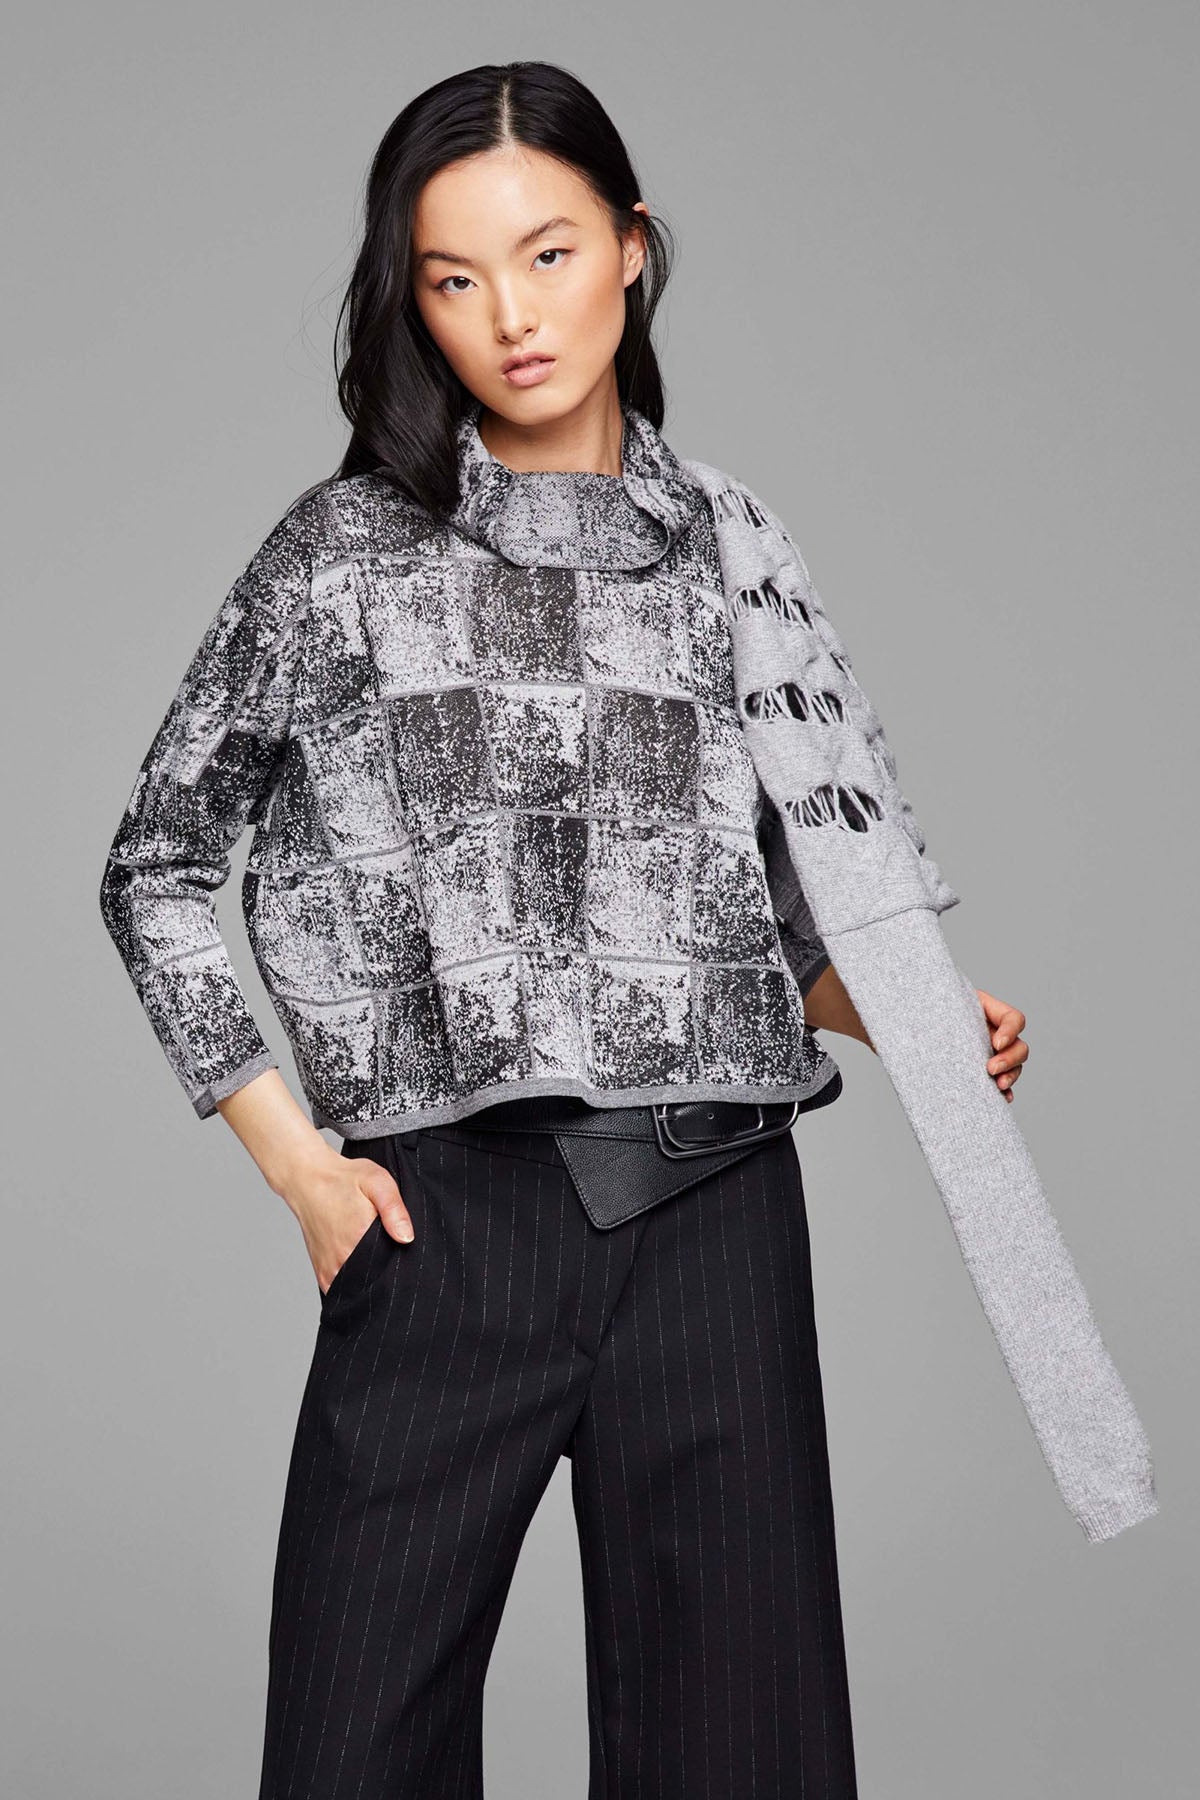 Sarah Pacini Dökümlü Yaka Triko-Libas Trendy Fashion Store